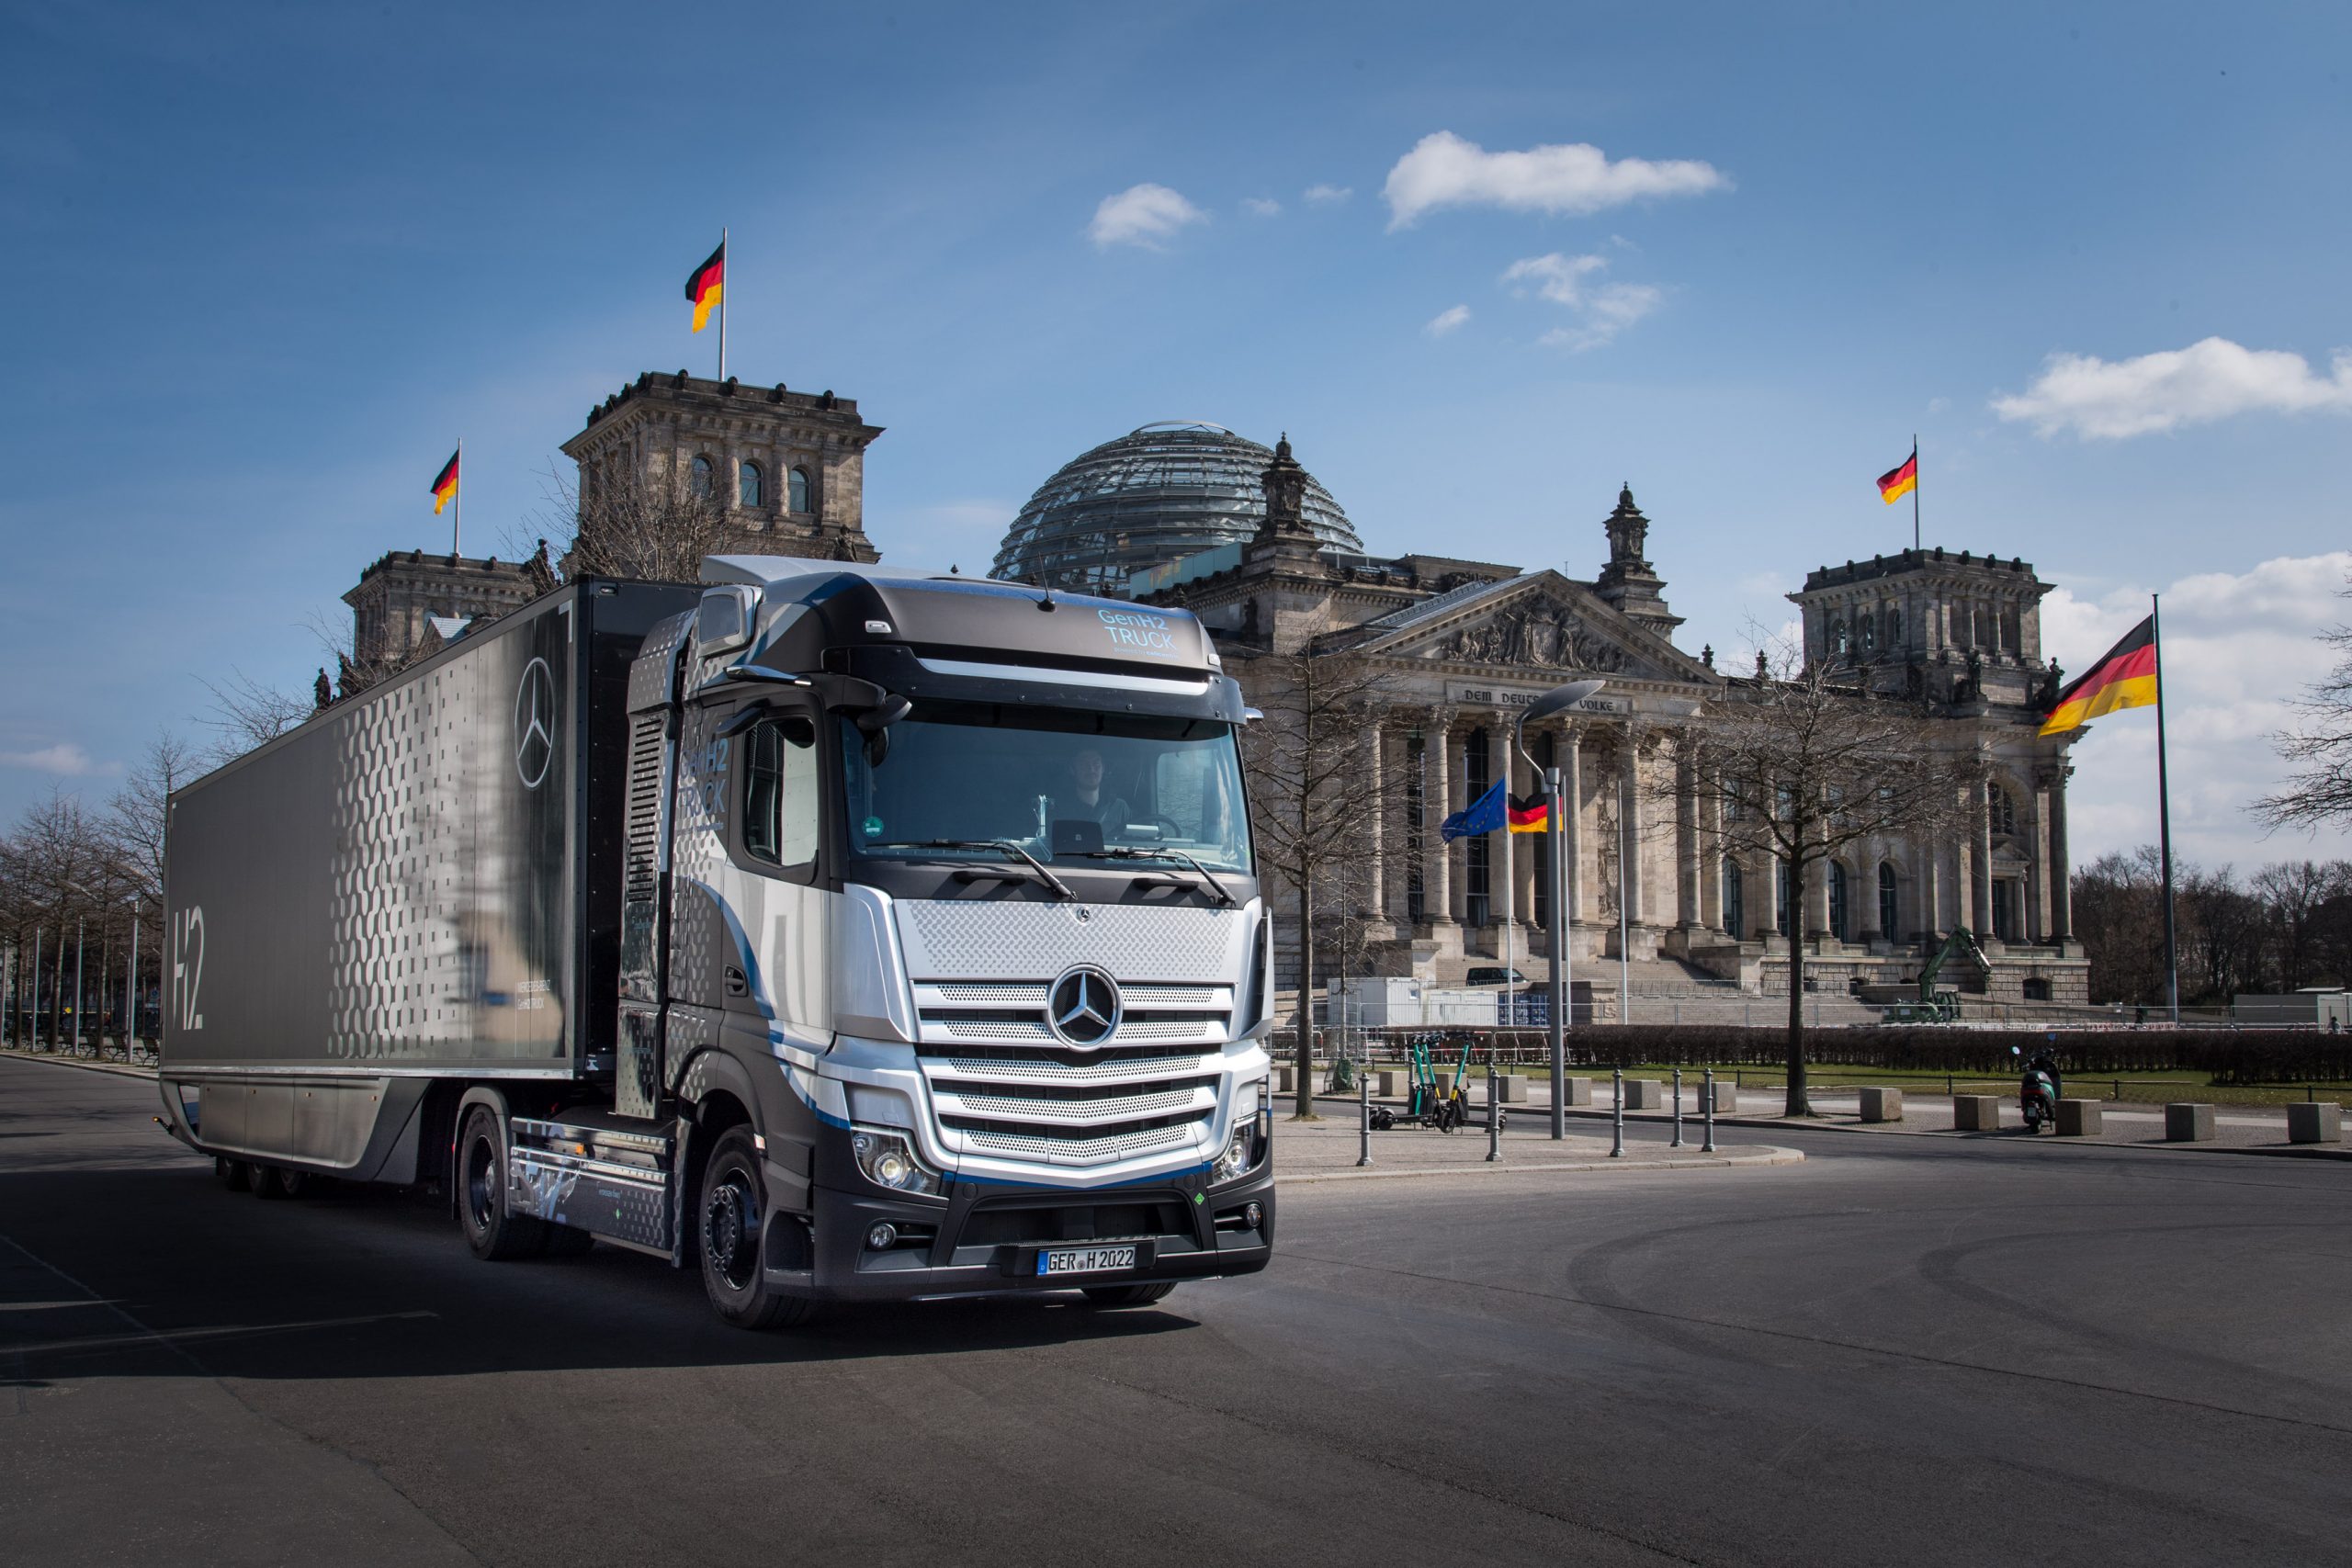 Lire la suite à propos de l’article Le camion à hydrogène de Daimler s’affiche à Berlin